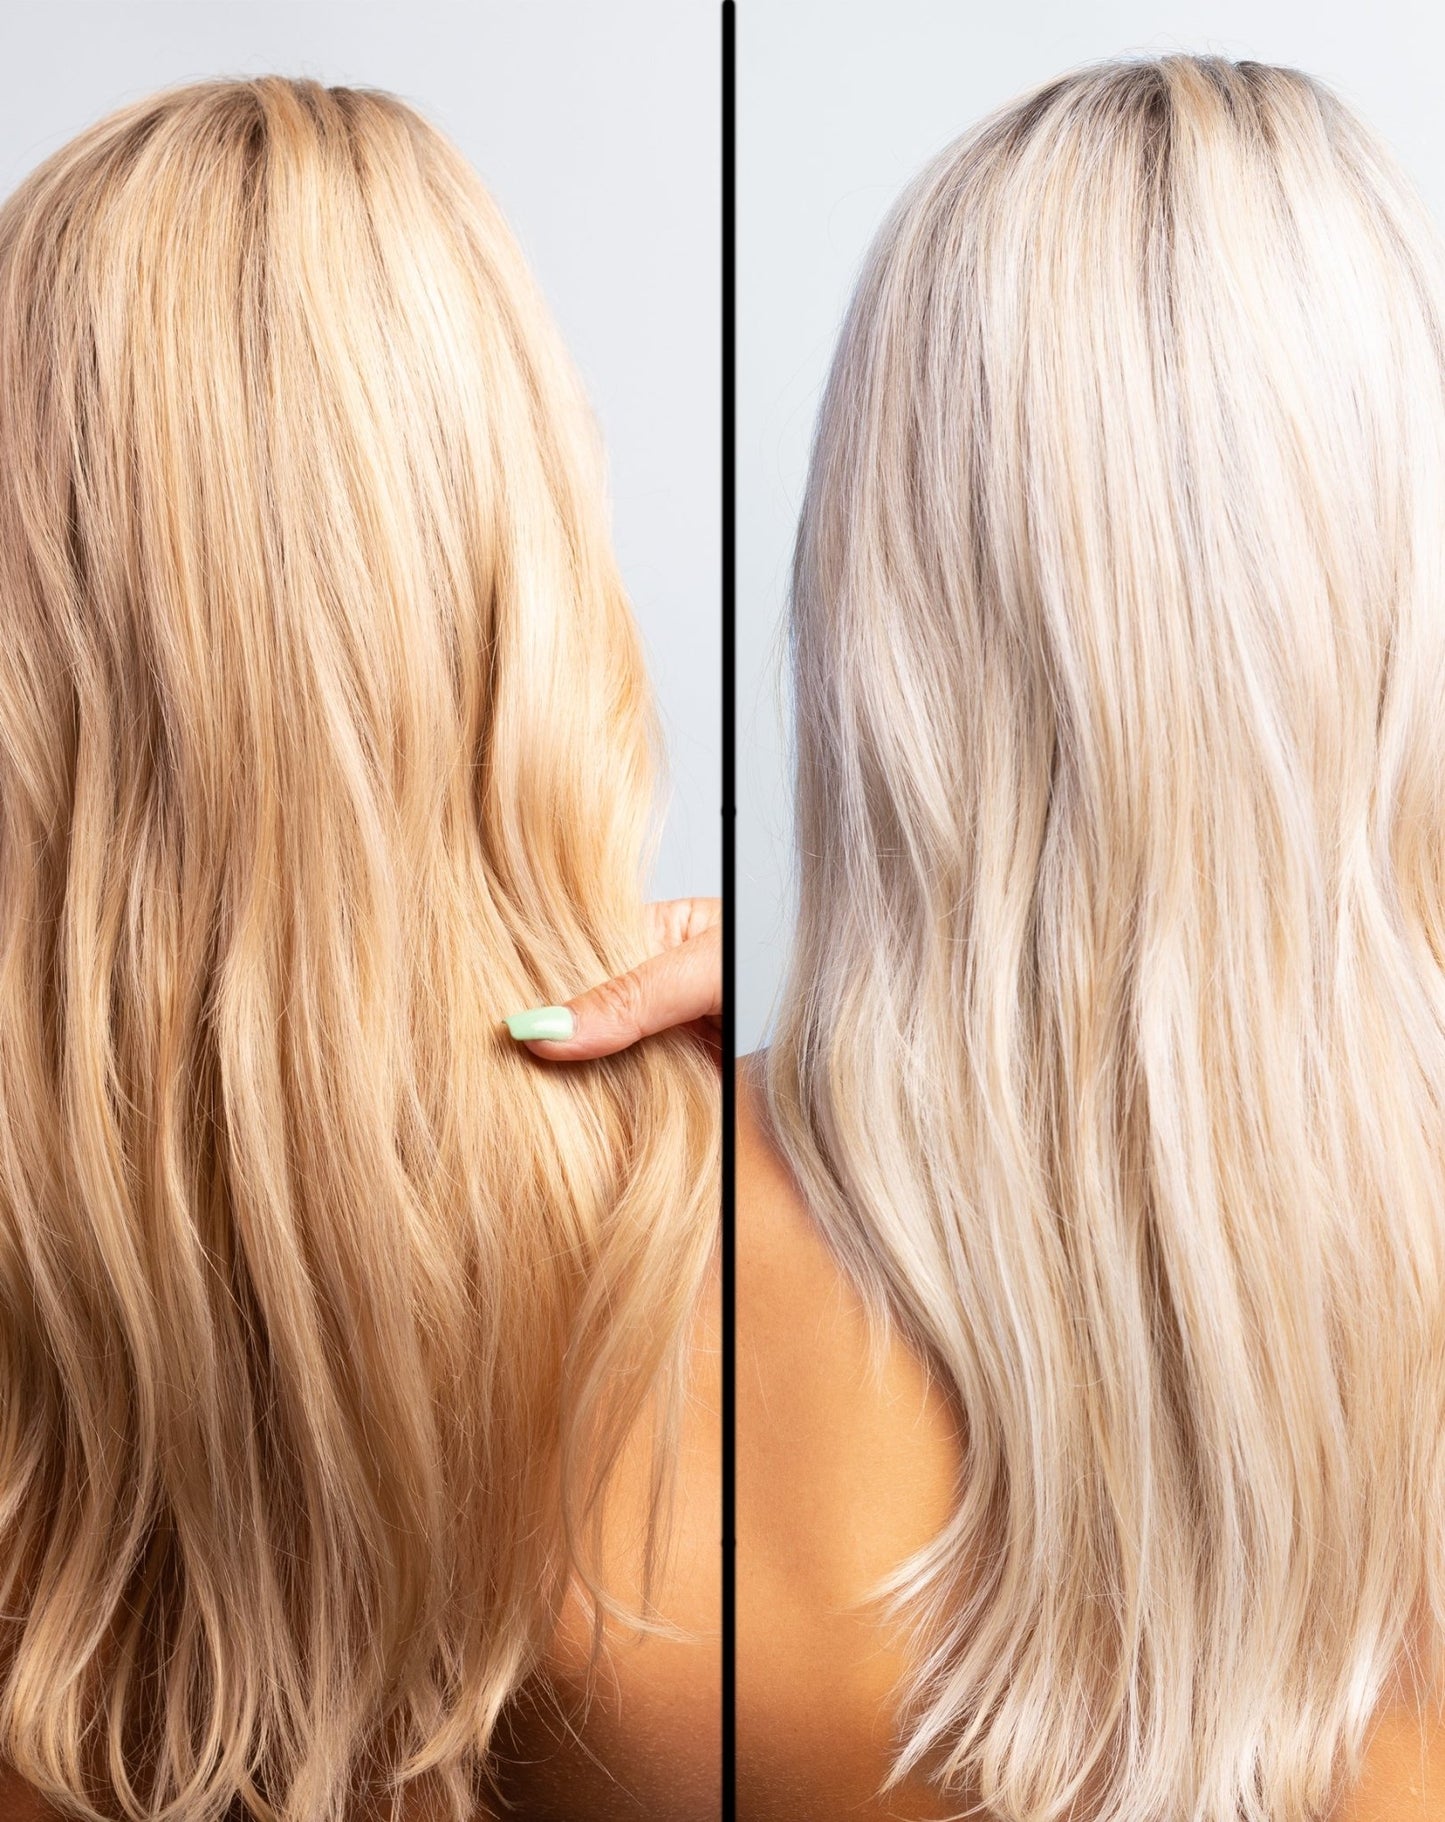 Före och efter bild av modeller med långt hår: till vänster gulaktig blond ton, till höger kallare, färgkorrigerad blond ton utan gula nyanser, effekten av Kolai Silver Serie, mot ljusgrå bakgrund